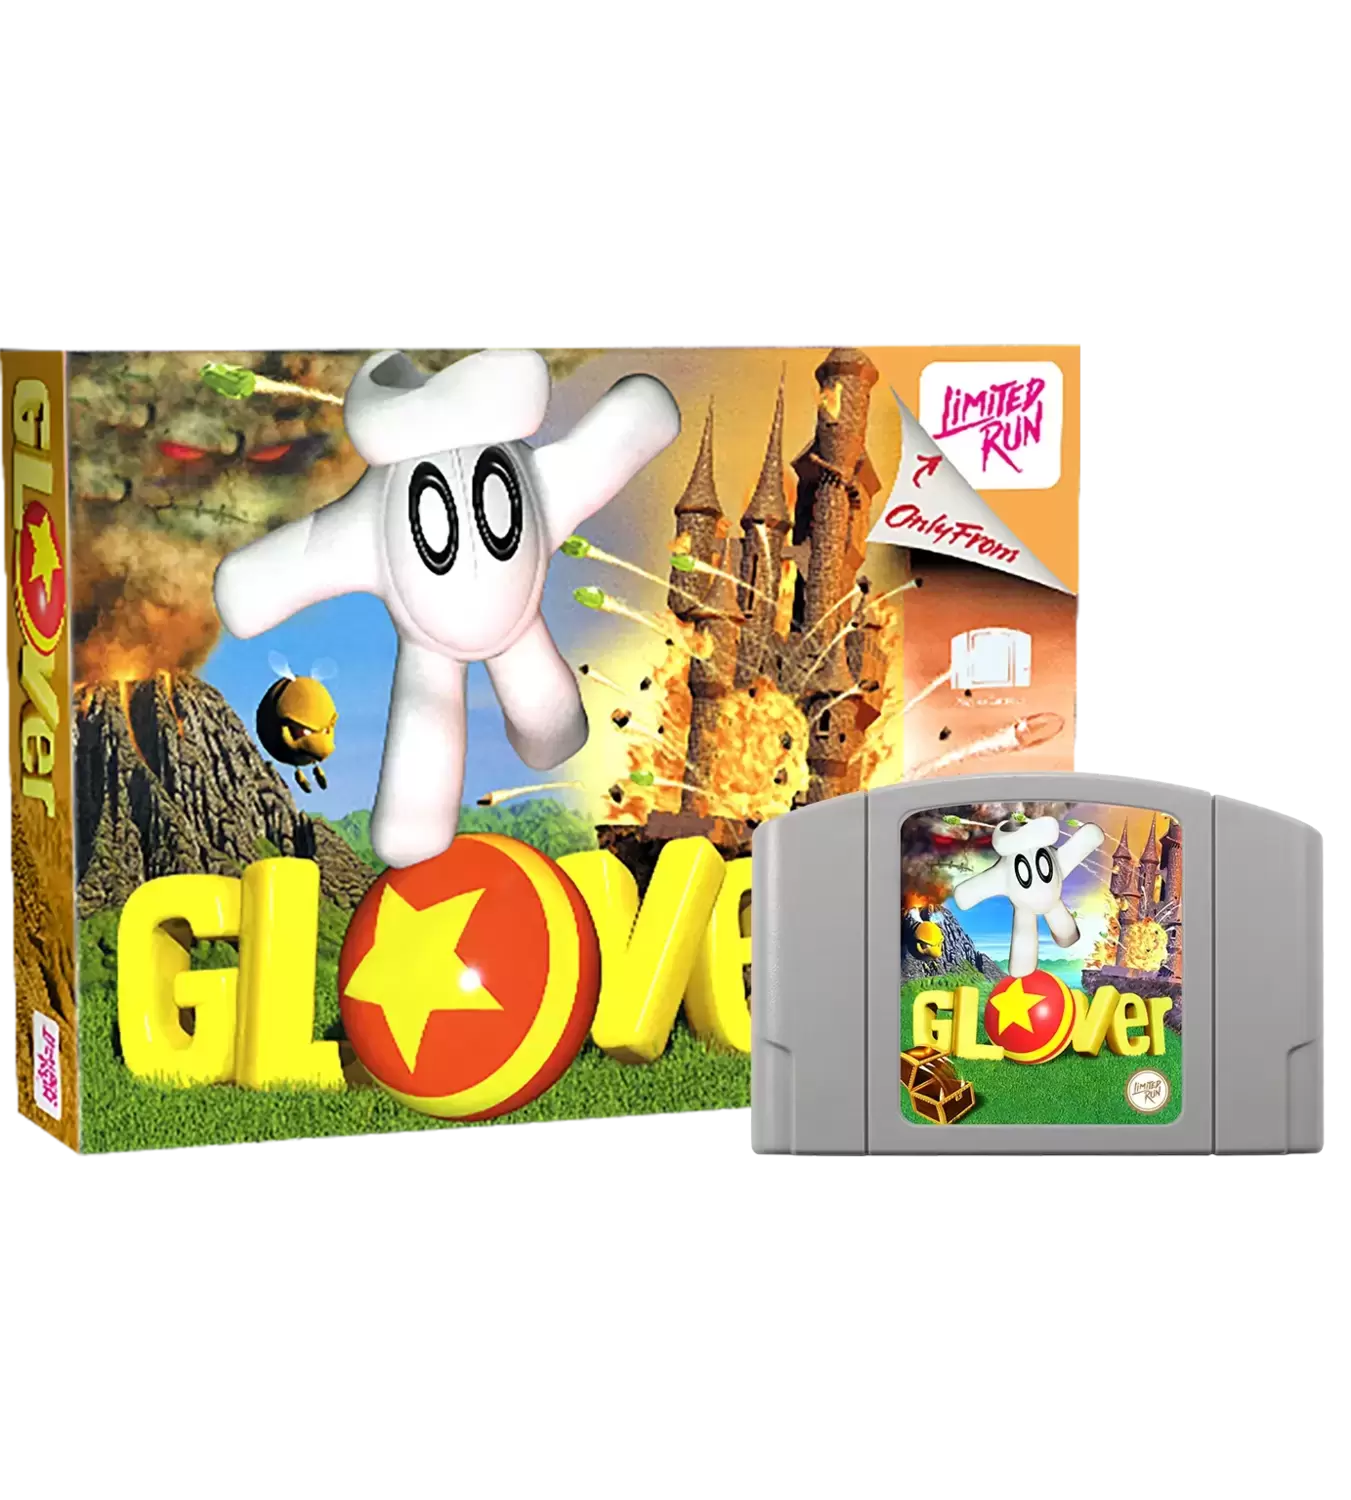 Jeux Nintendo 64 - Glover